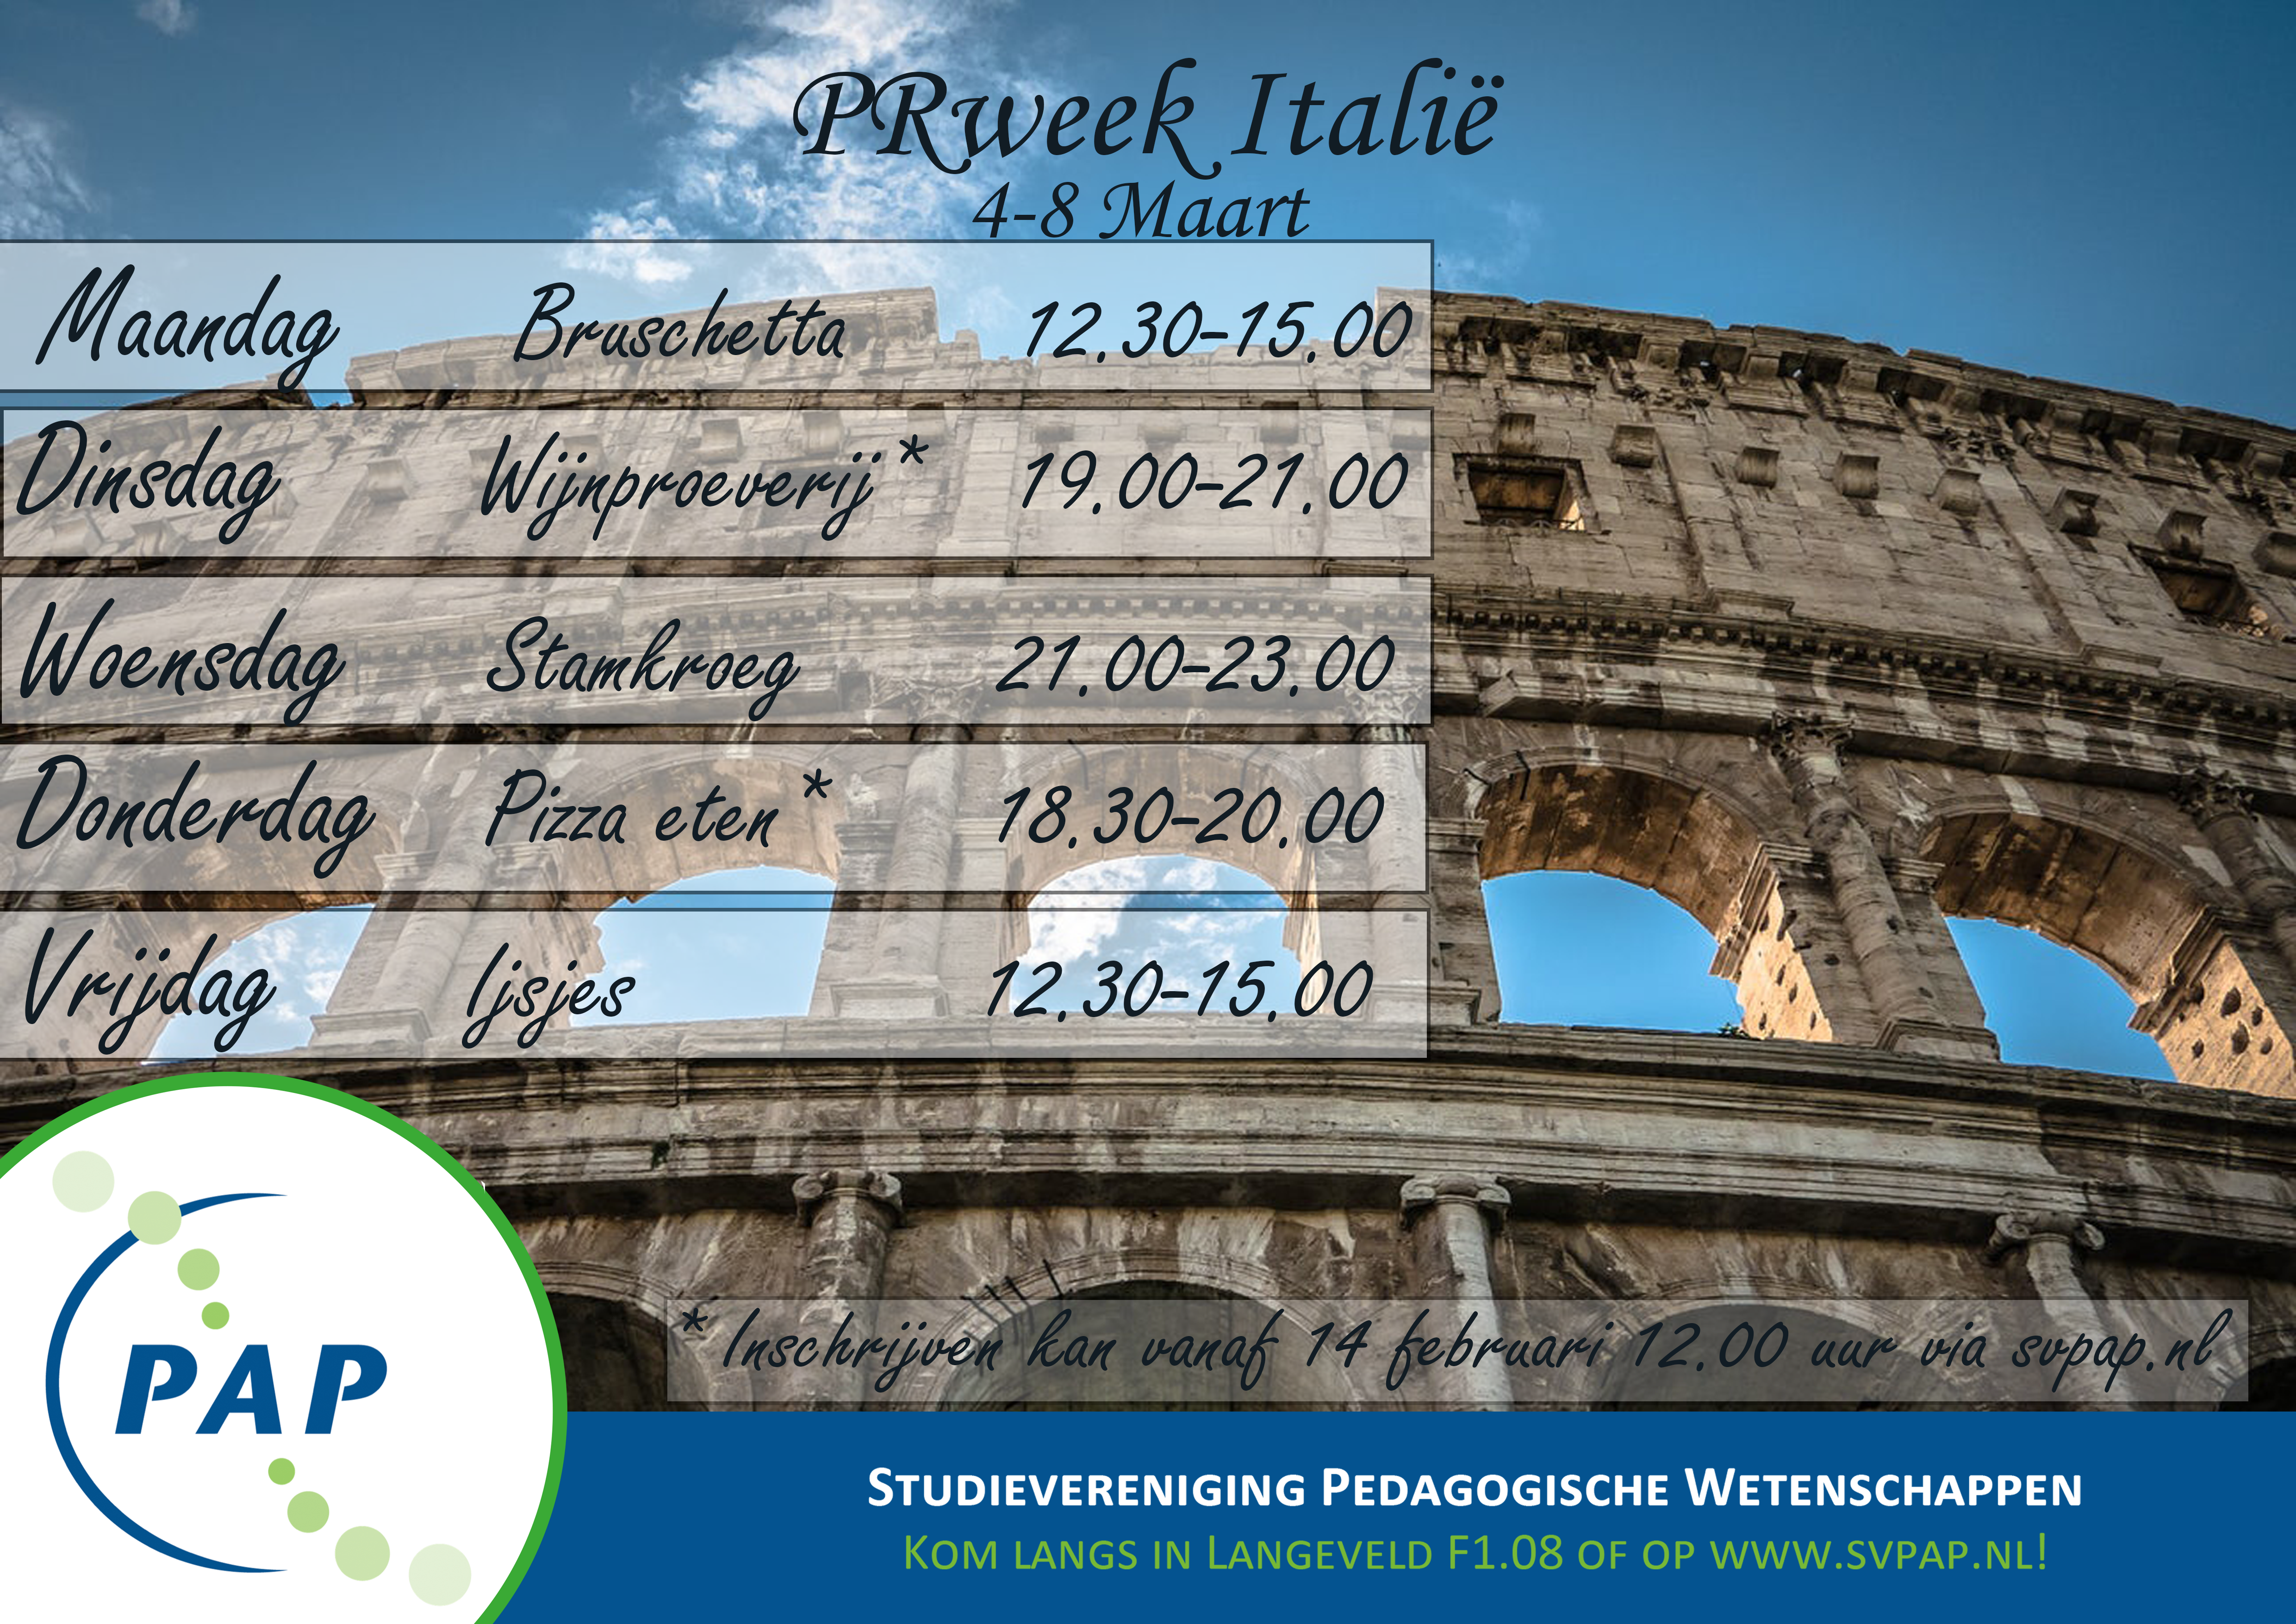 Promoweek Italië